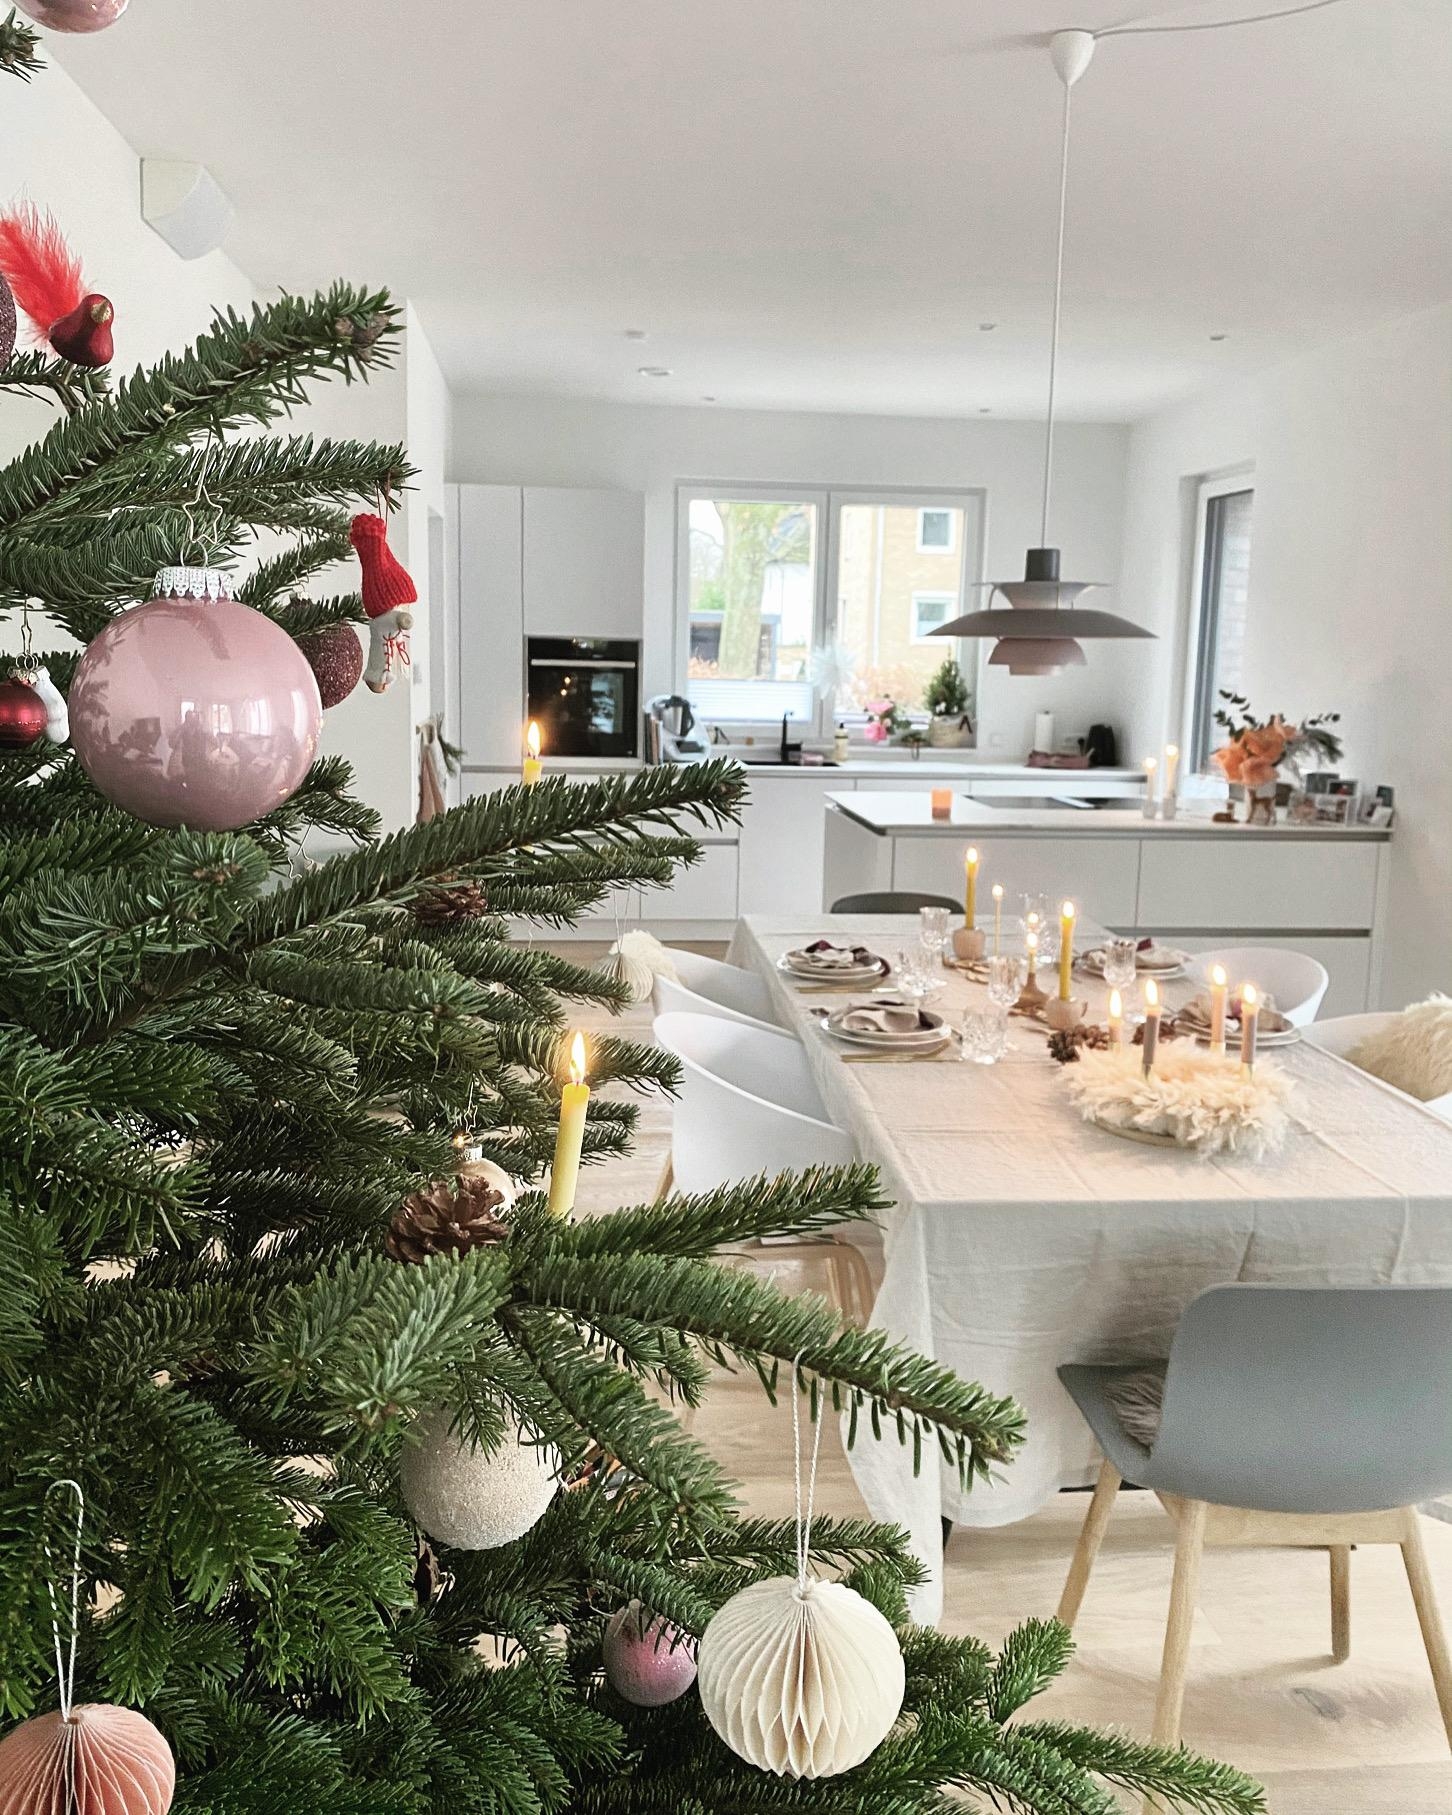 Weihnachten 2020 💫
#gedecktertisch#küche#kitchen#weisseküche#interior#couchliebt#esstisch